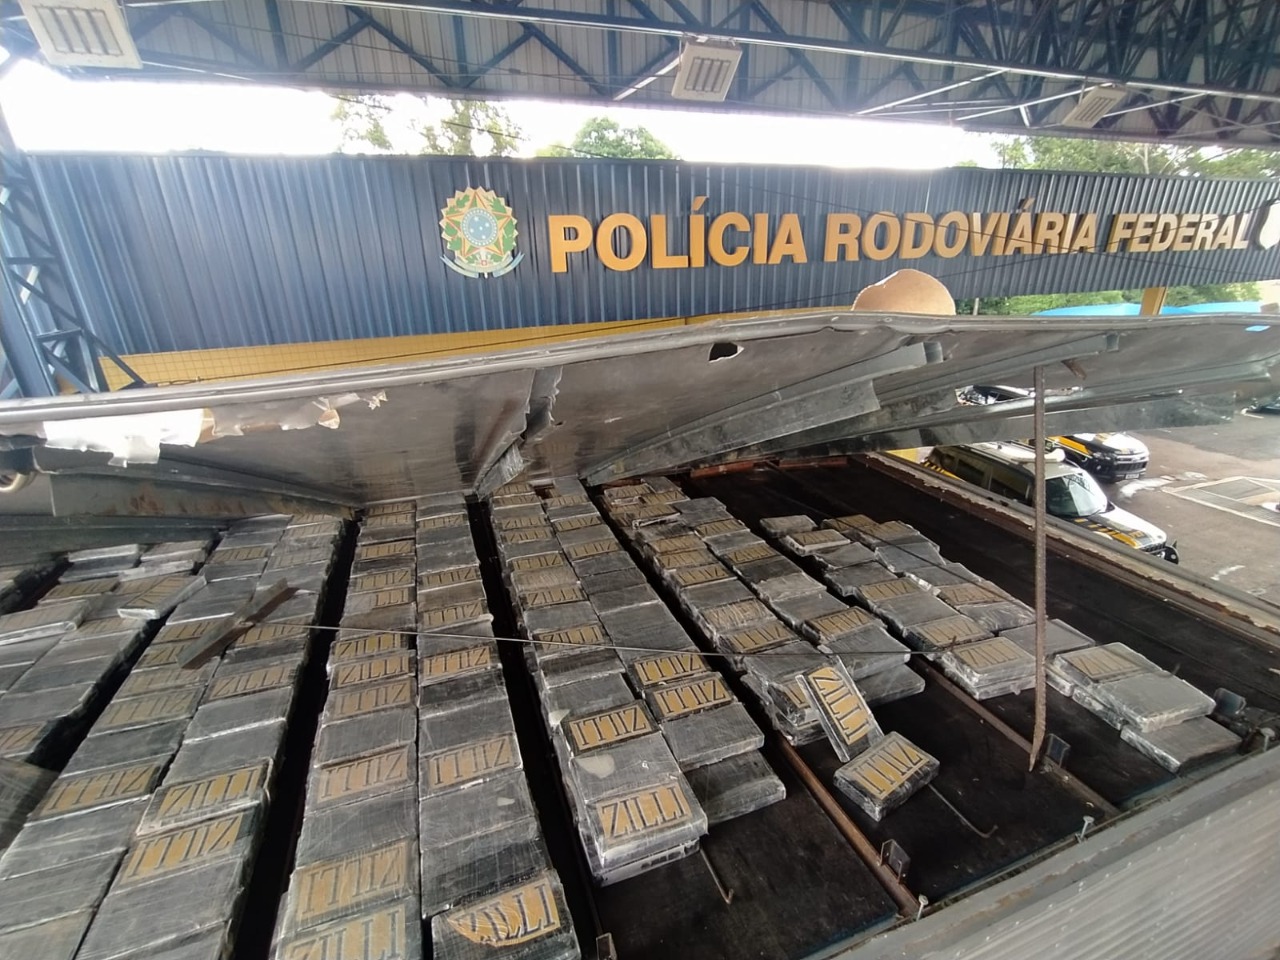  Em ação integrada, PF e PRF realizam apreensão recorde de cocaína no Paraná